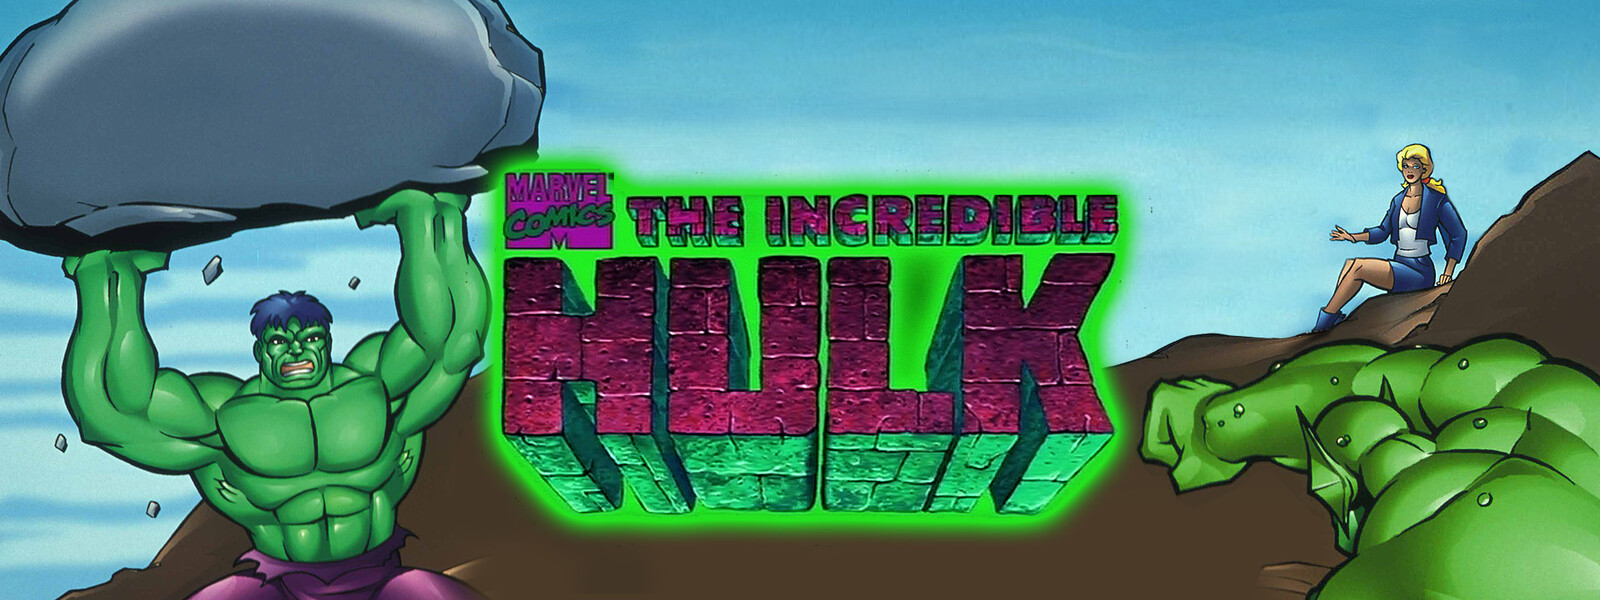 超人ハルク (1996) シーズン1の動画 - インクレディブル・ハルク